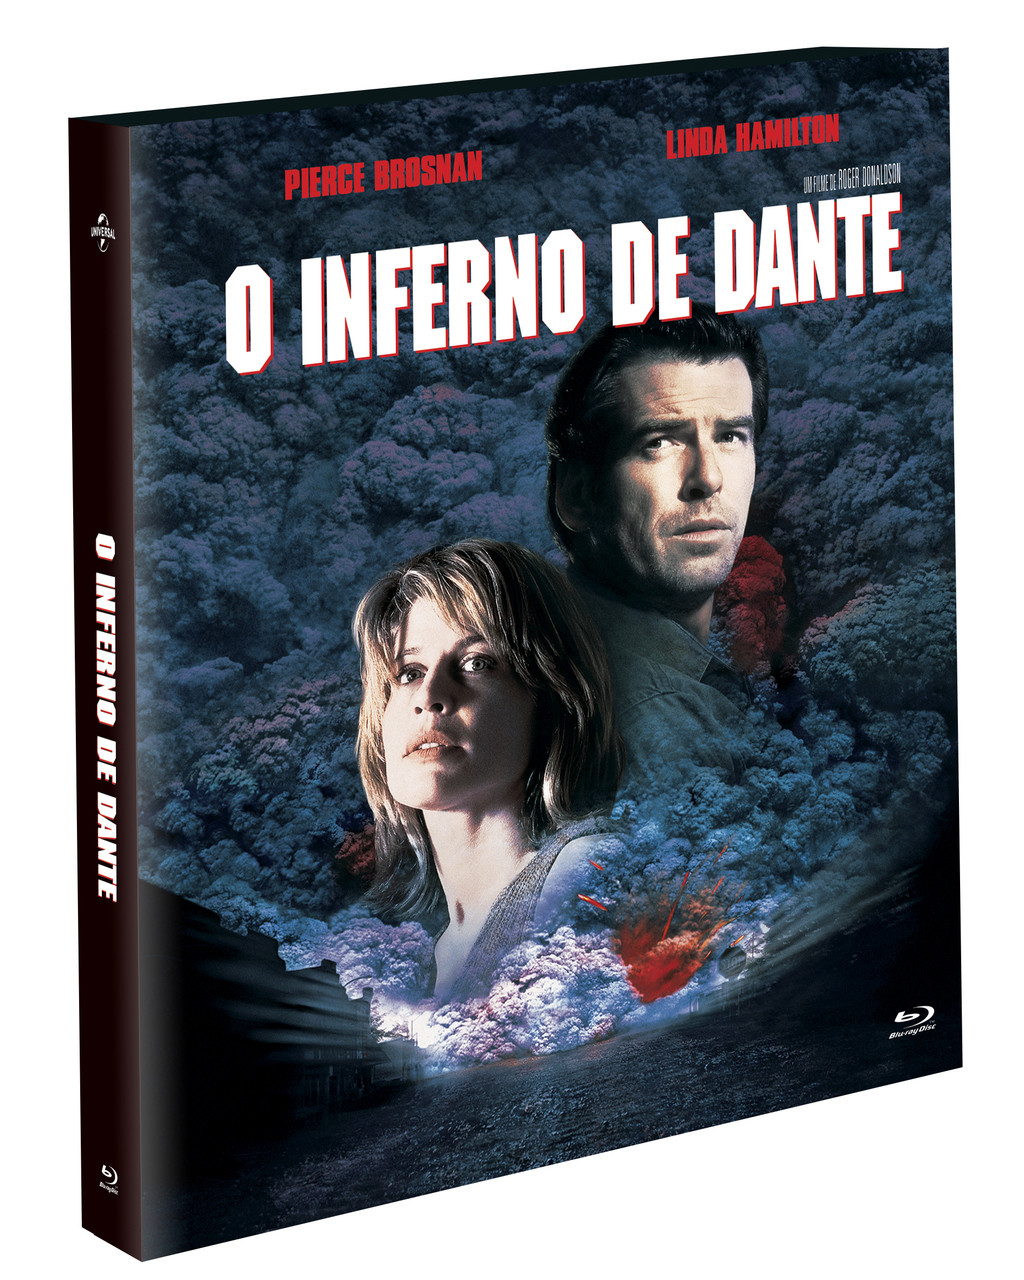 Dante's Inferno - Uma Animação Épica ( Dante's Inferno: An Animated Epic )  [ Blu-Ray ]